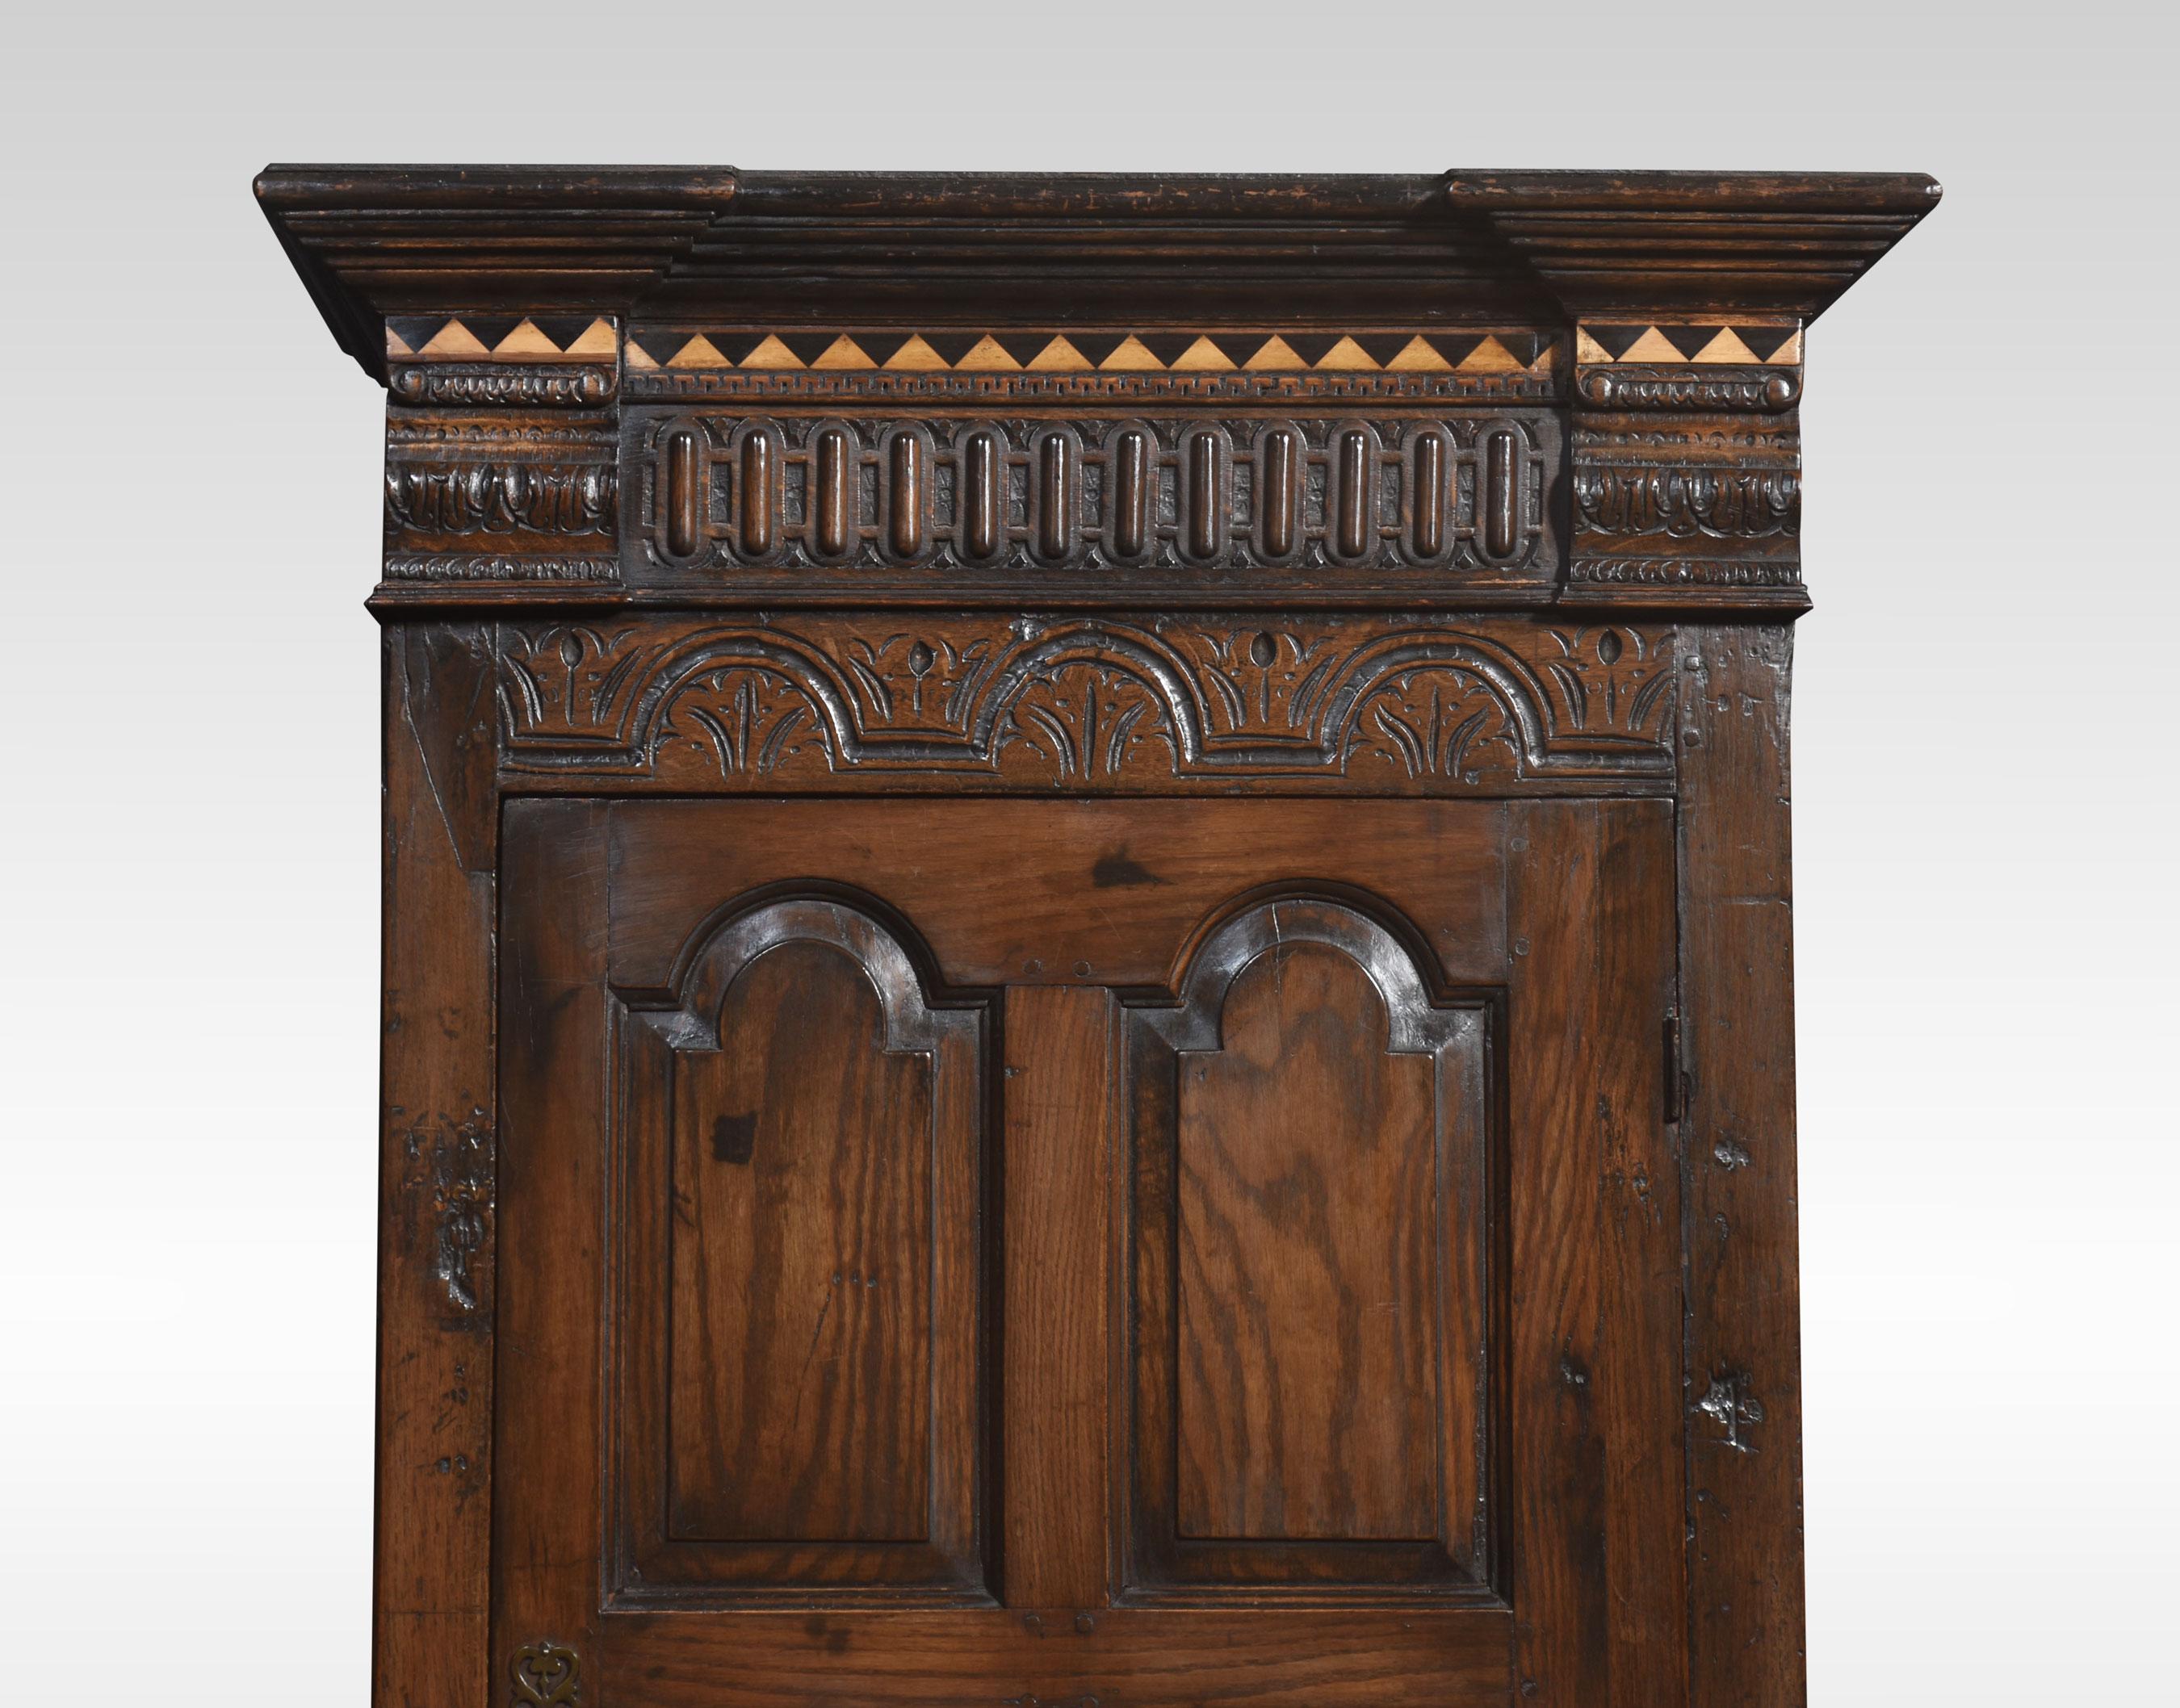 Eintüriger Kleiderschrank aus Eiche im Stil des 17. Jahrhunderts, mit umgedrehtem Gesims über geschnitzten Details. Die große eichengetäfelte Tür öffnet sich und gibt den Blick auf einen großen Hängebereich frei. Alle stehen auf